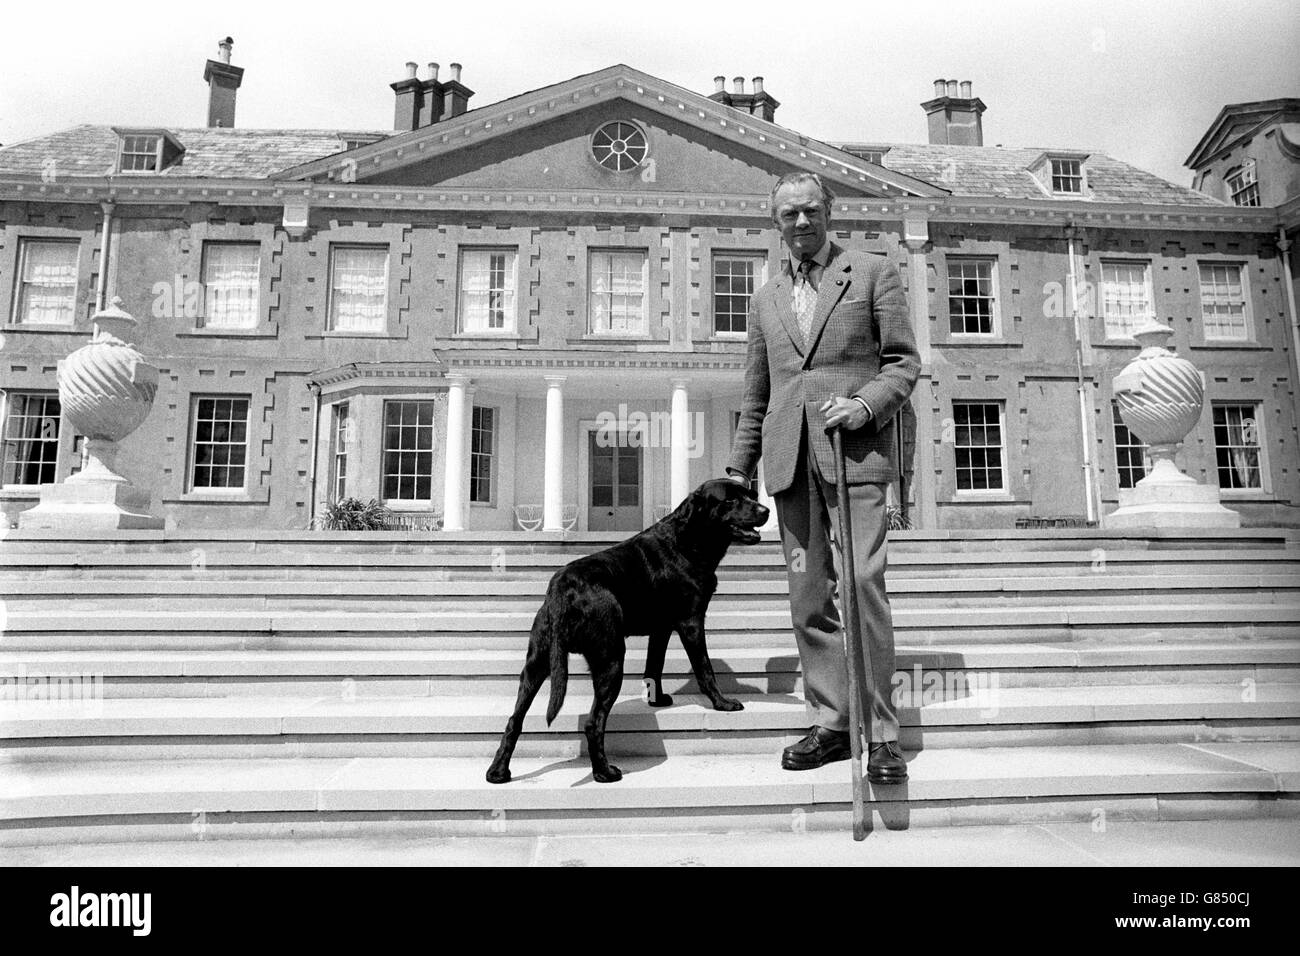 L'ottavo duca di Wellington, con il suo Labrador Brandy nero, sui gradini della sua residenza di campagna di famiglia del XVII secolo - Stratfield Saye House - vicino a Reading, Berkshire. E 'destinato ad essere aperto al pubblico per la prima volta quest'anno. Foto Stock